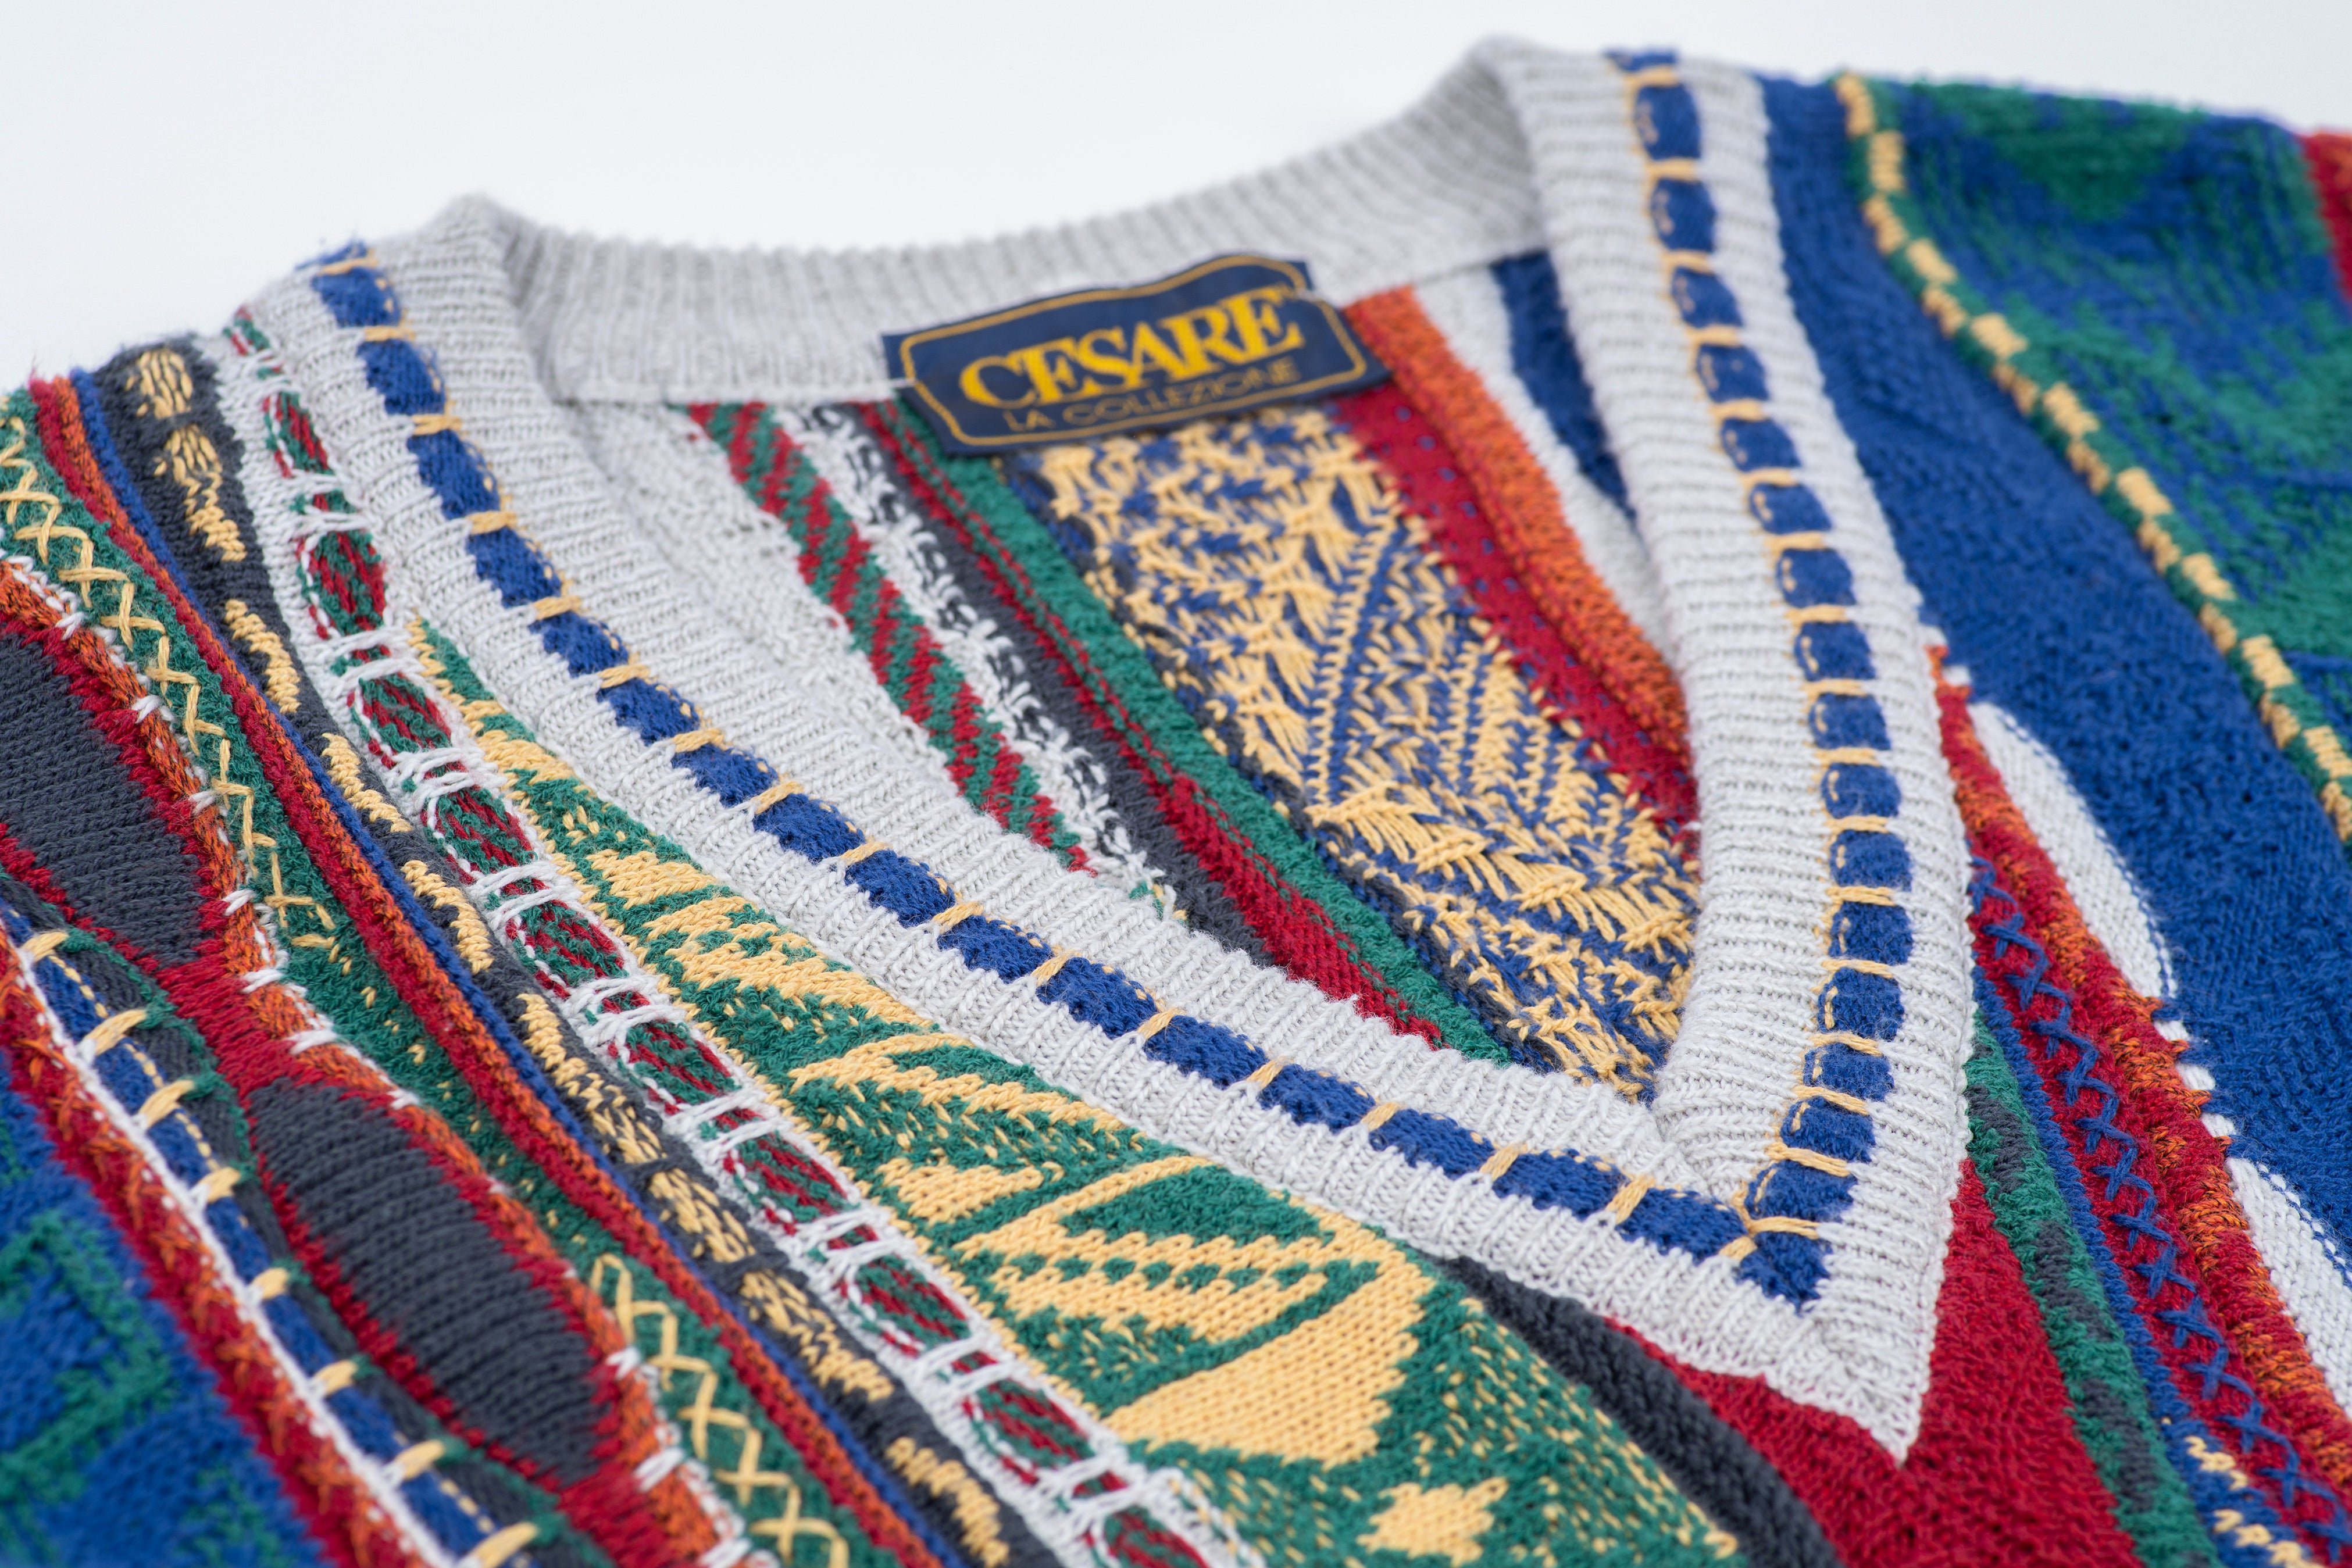 Cesare 90's Cosby Style Multicolor Cotton Sweater, Men's L